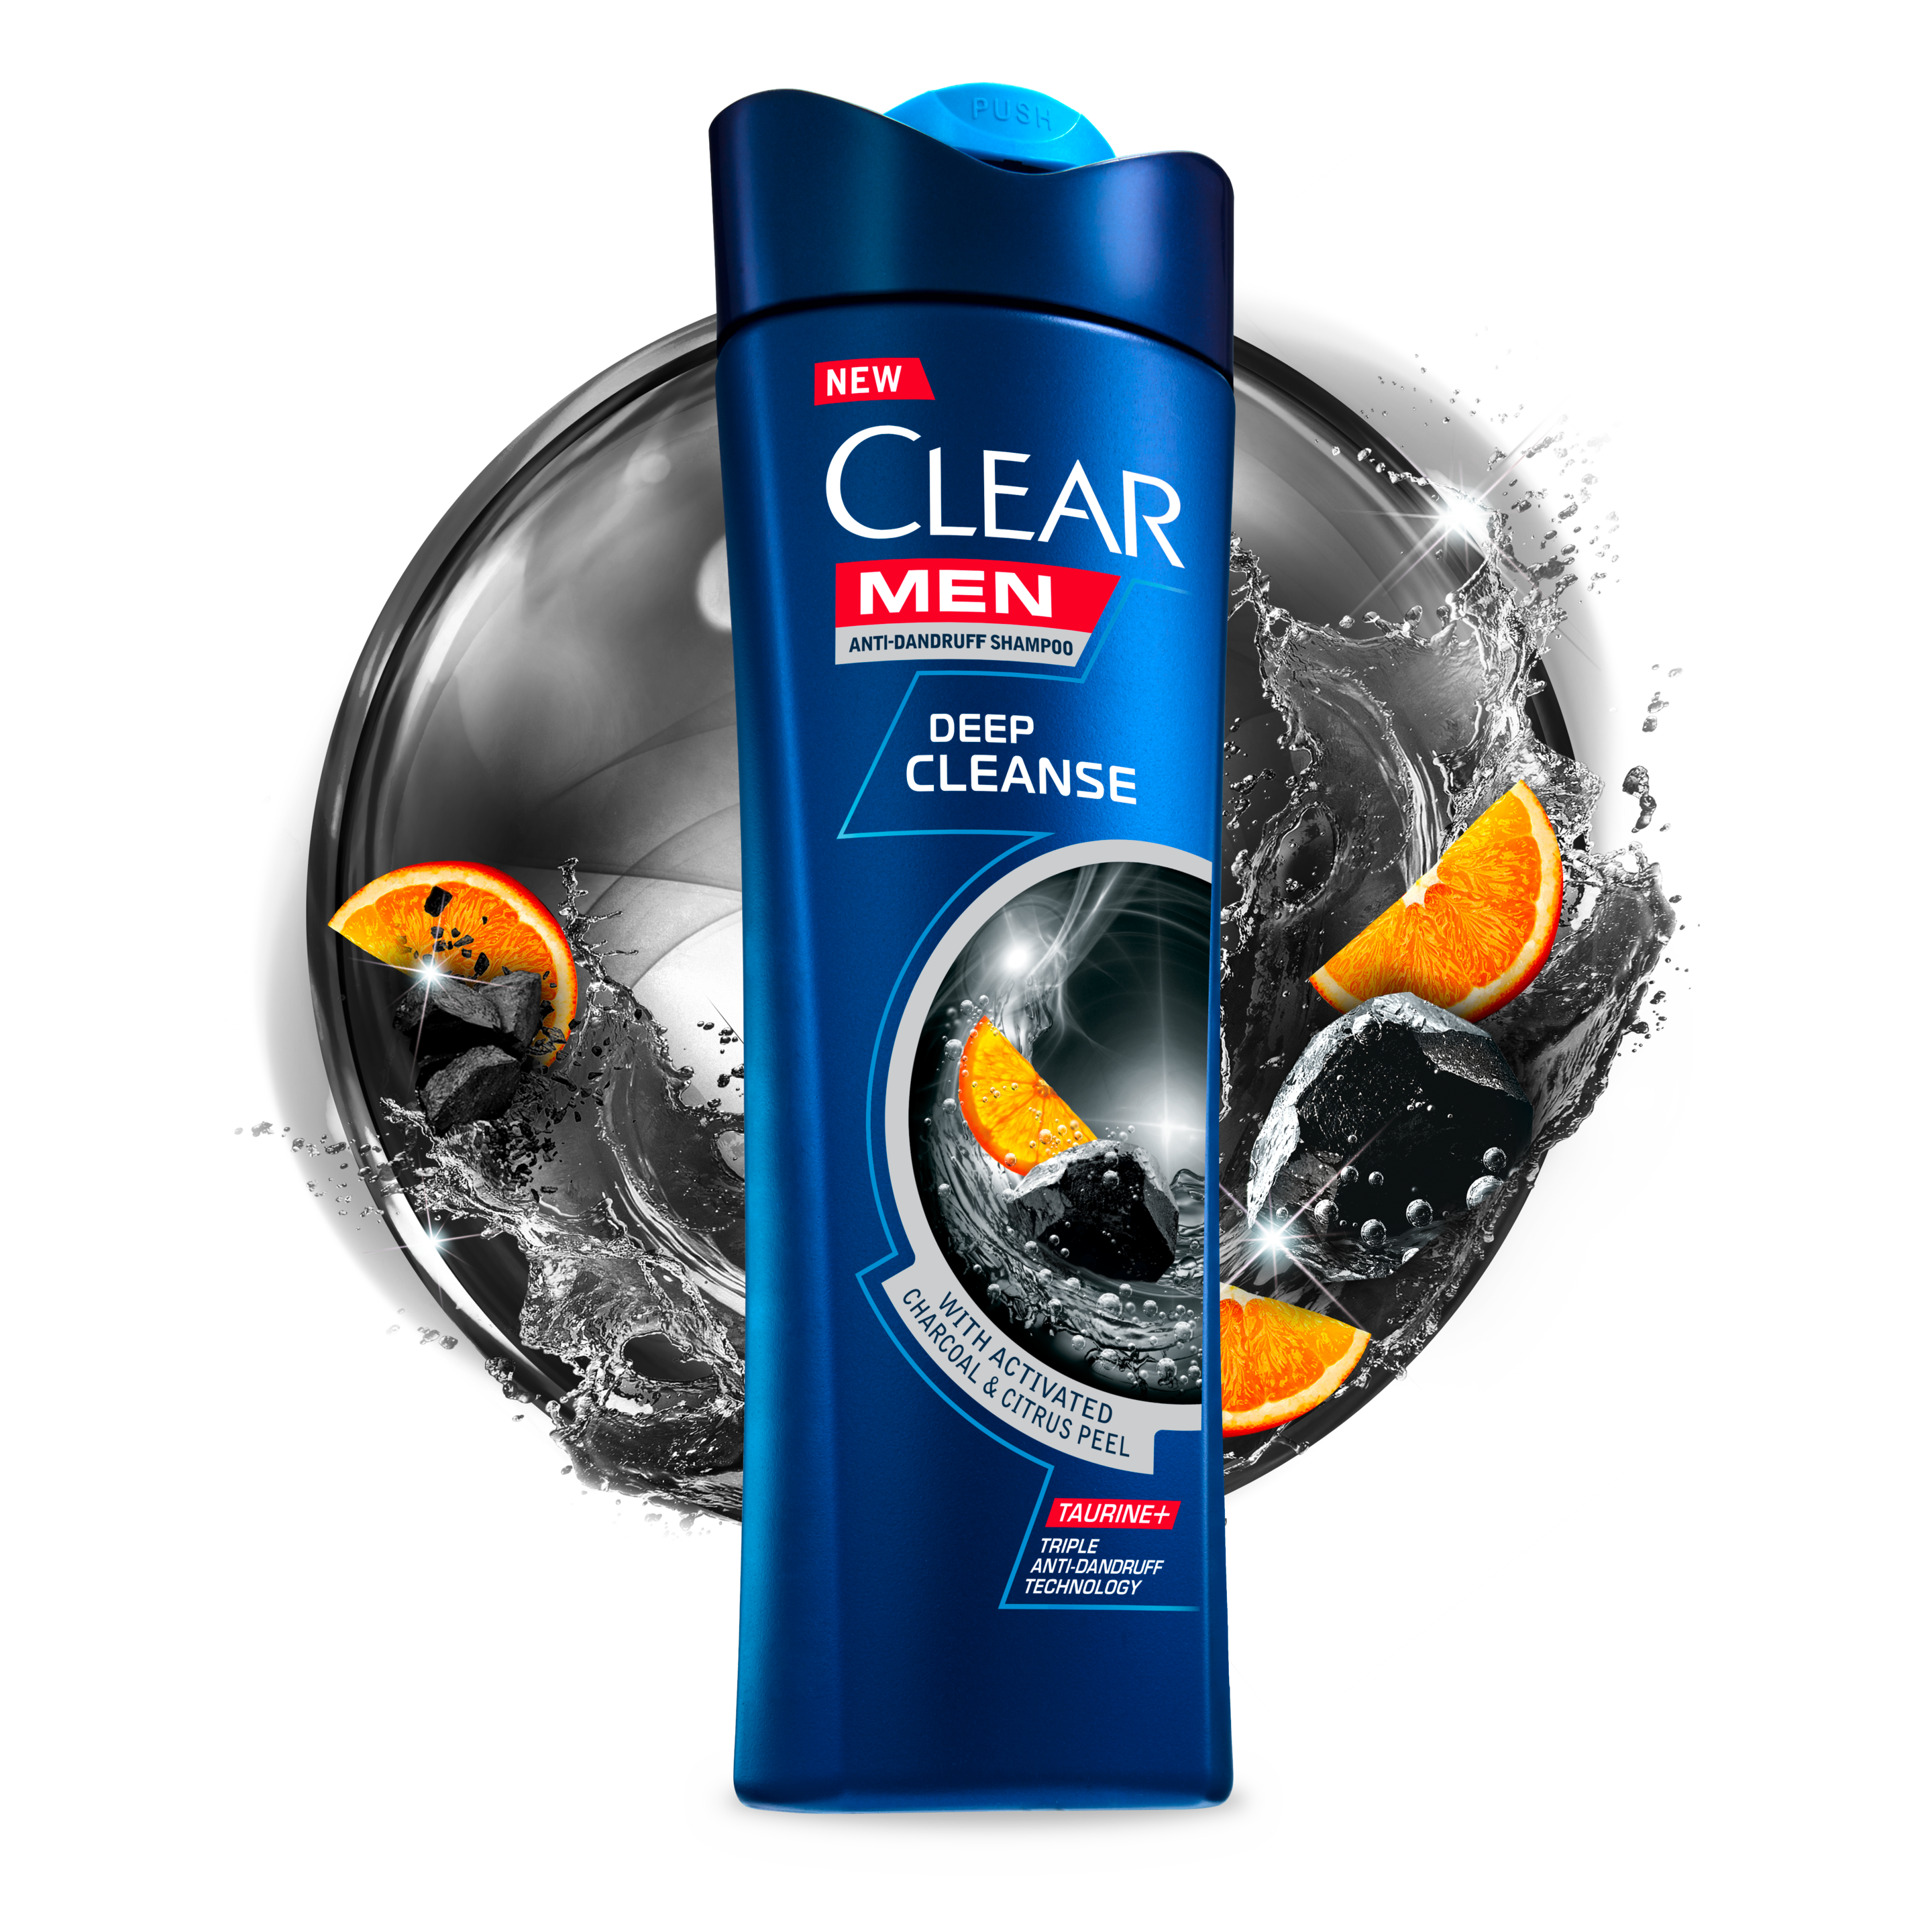 CLEAR Men Deep Cleanse Anti-dandruff Shampoo Text